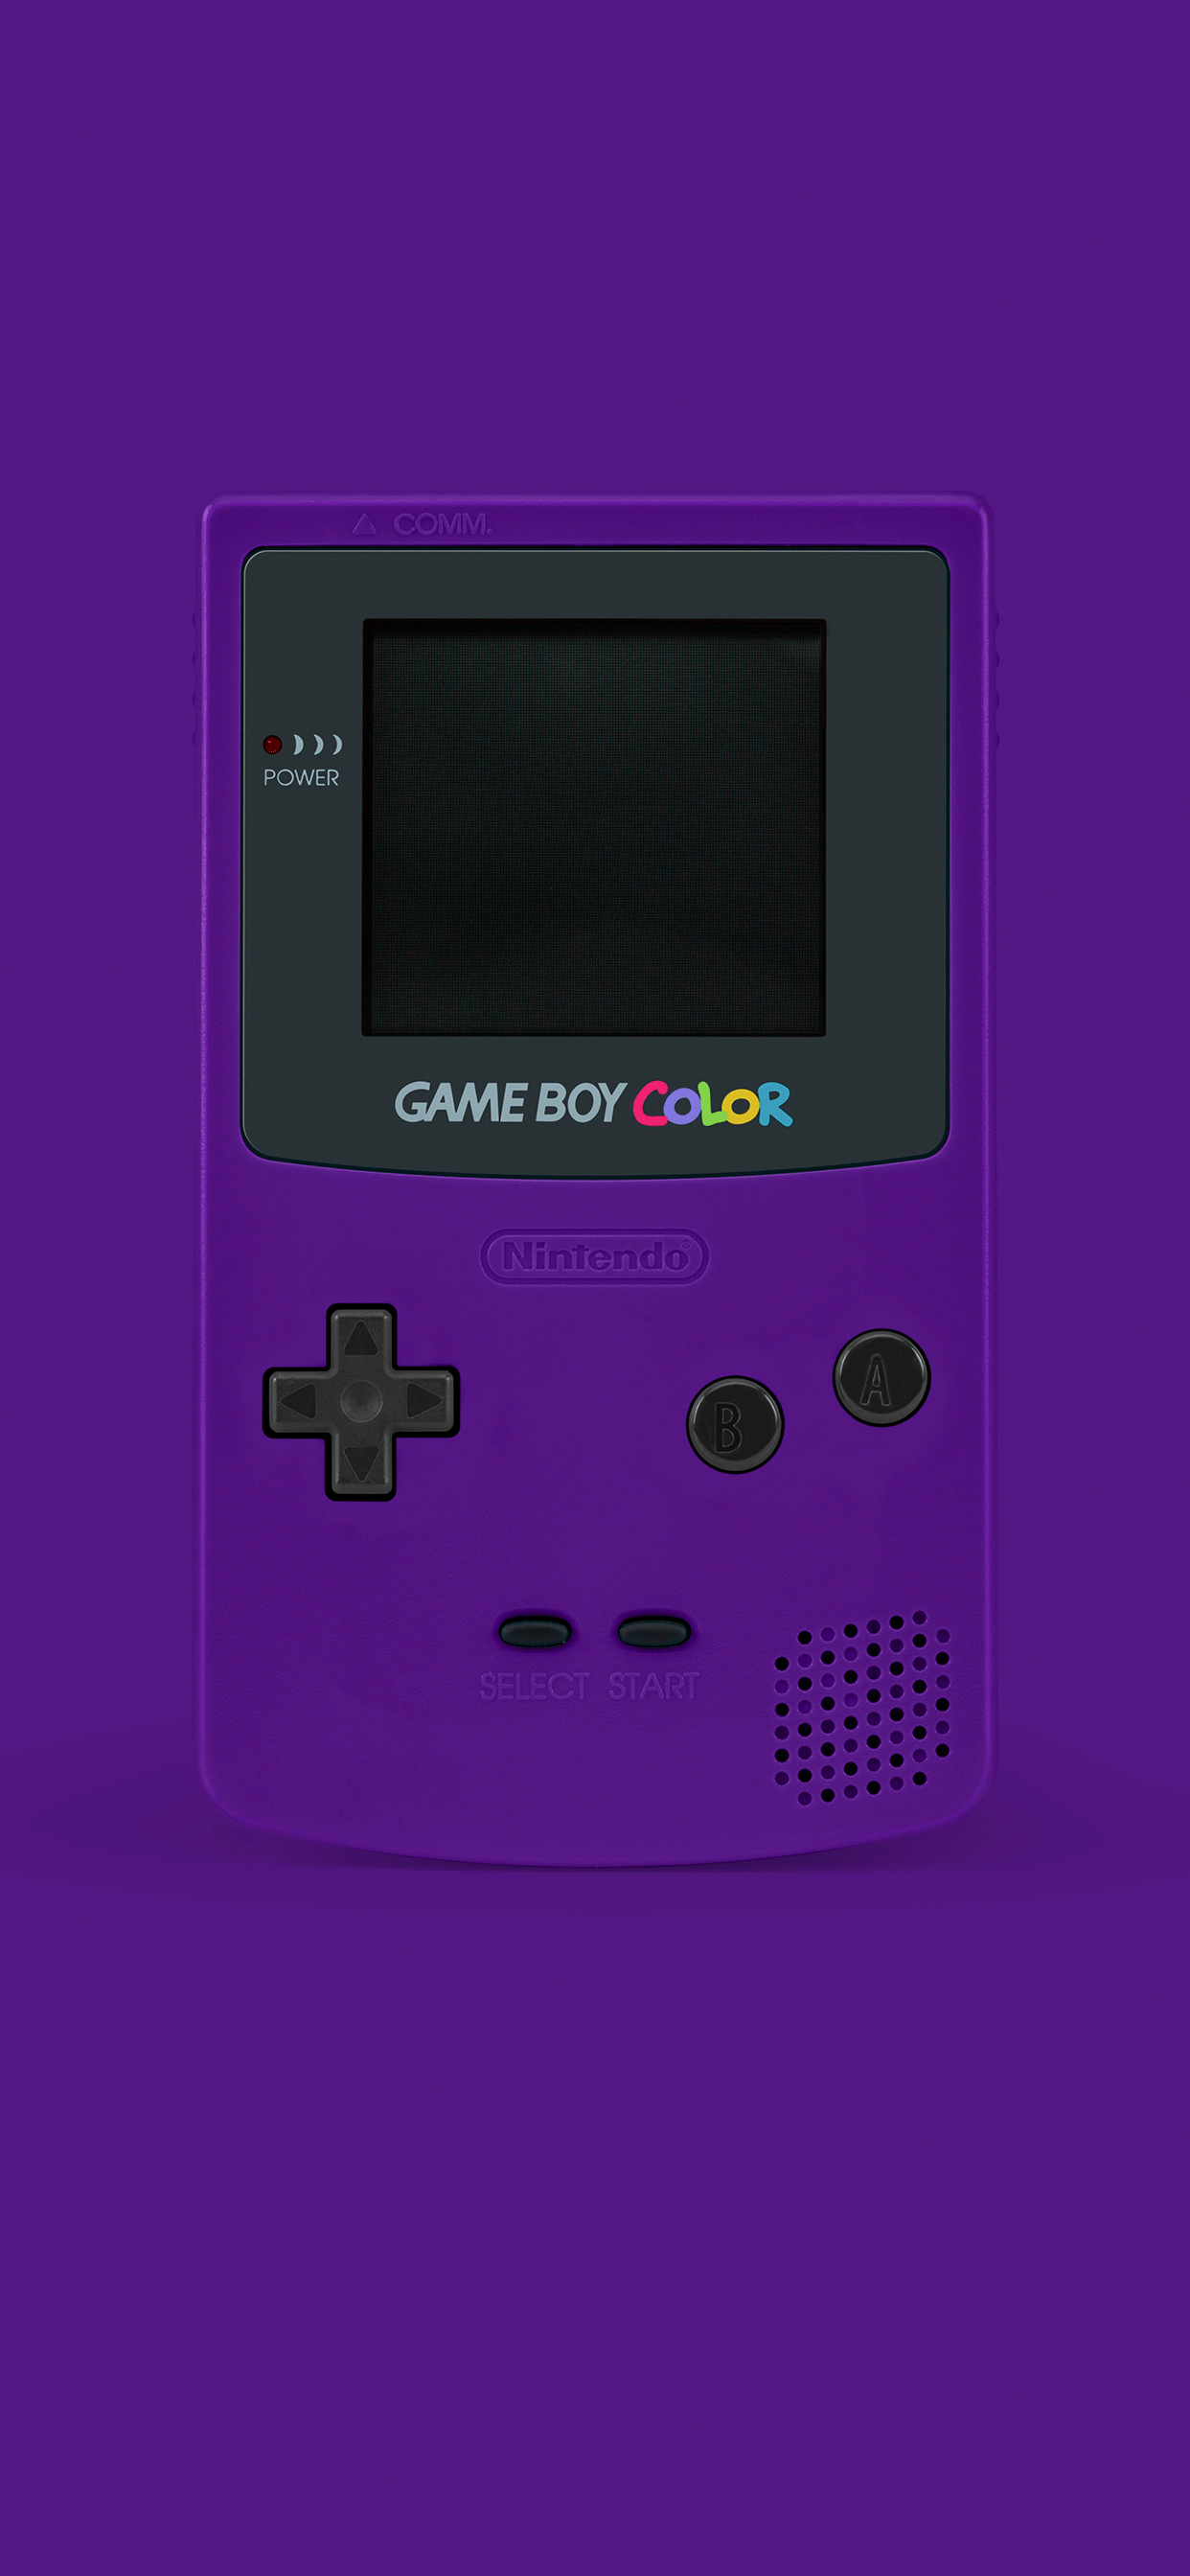 A purple Nintendo Gameboy Color - Game Boy